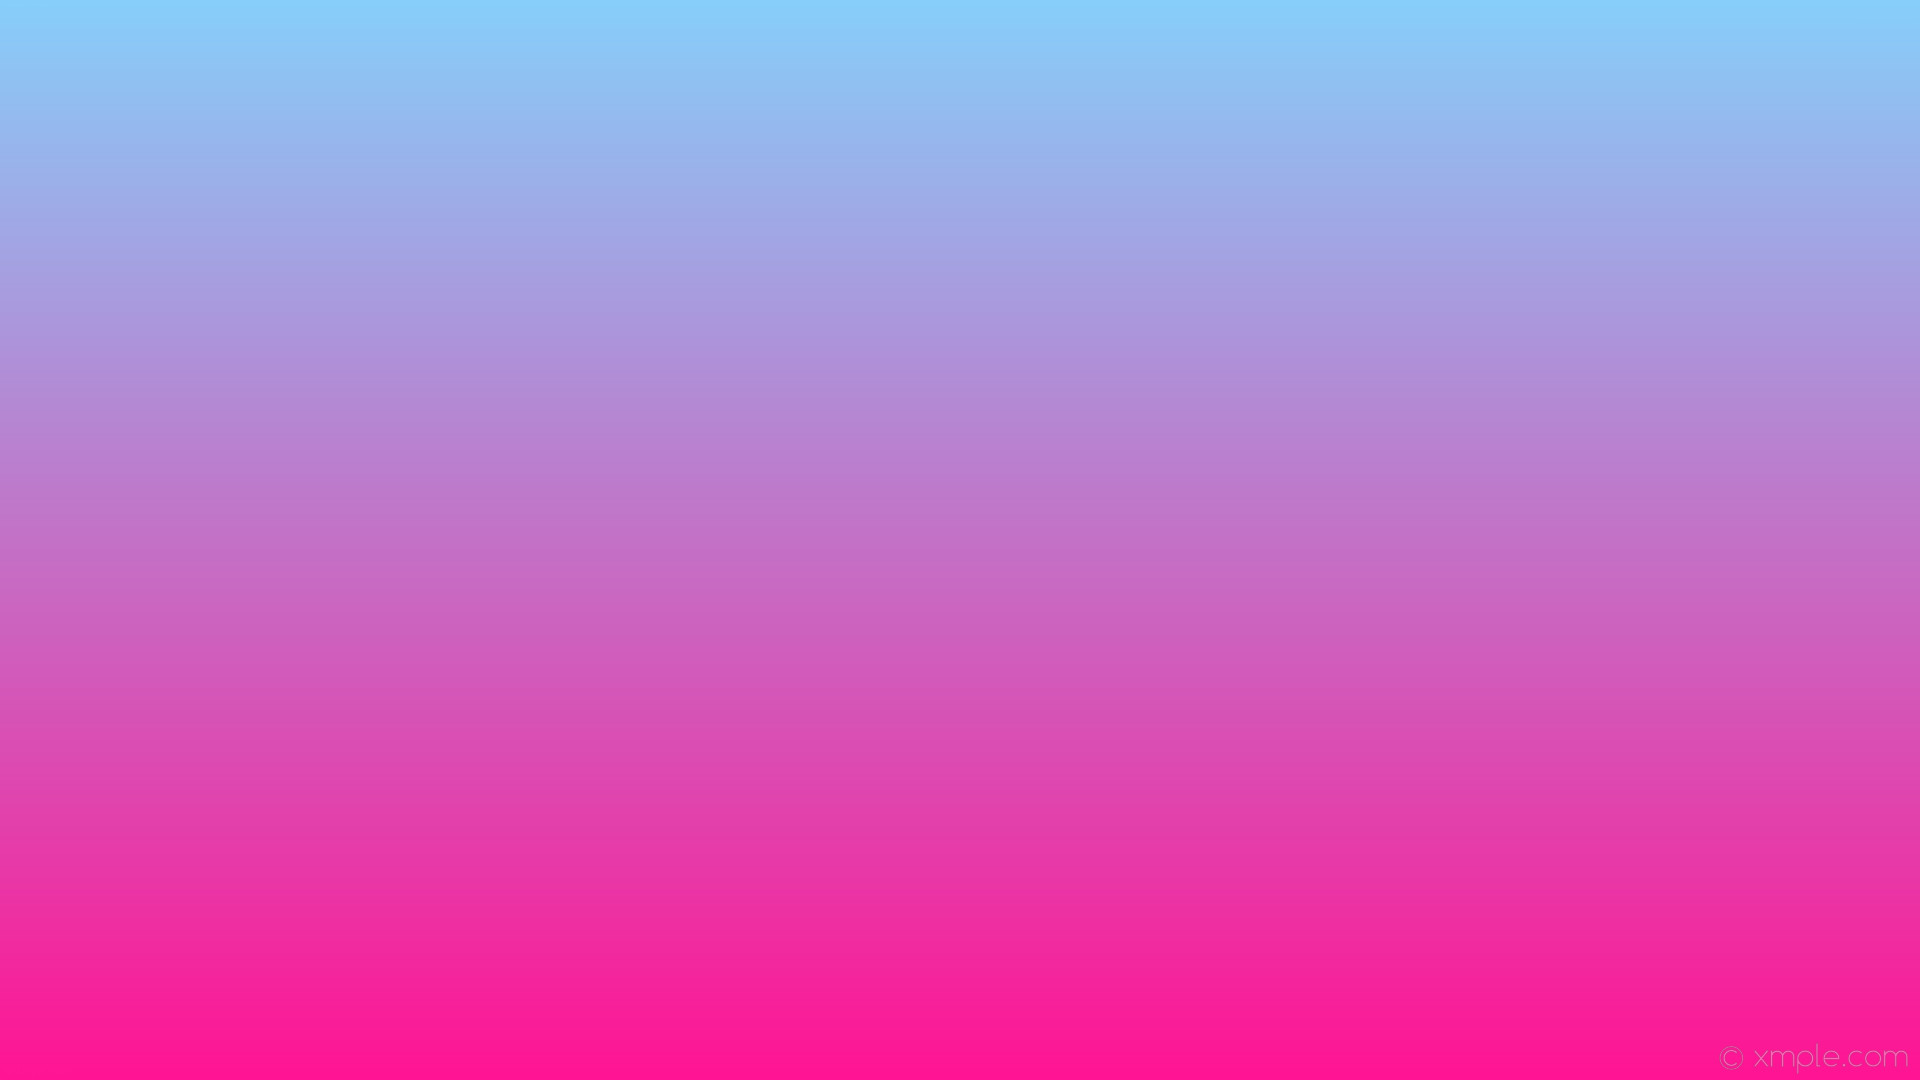 Wallpaper blue linear gradient pink deep pink light sky blue #ff1493 cefa 270